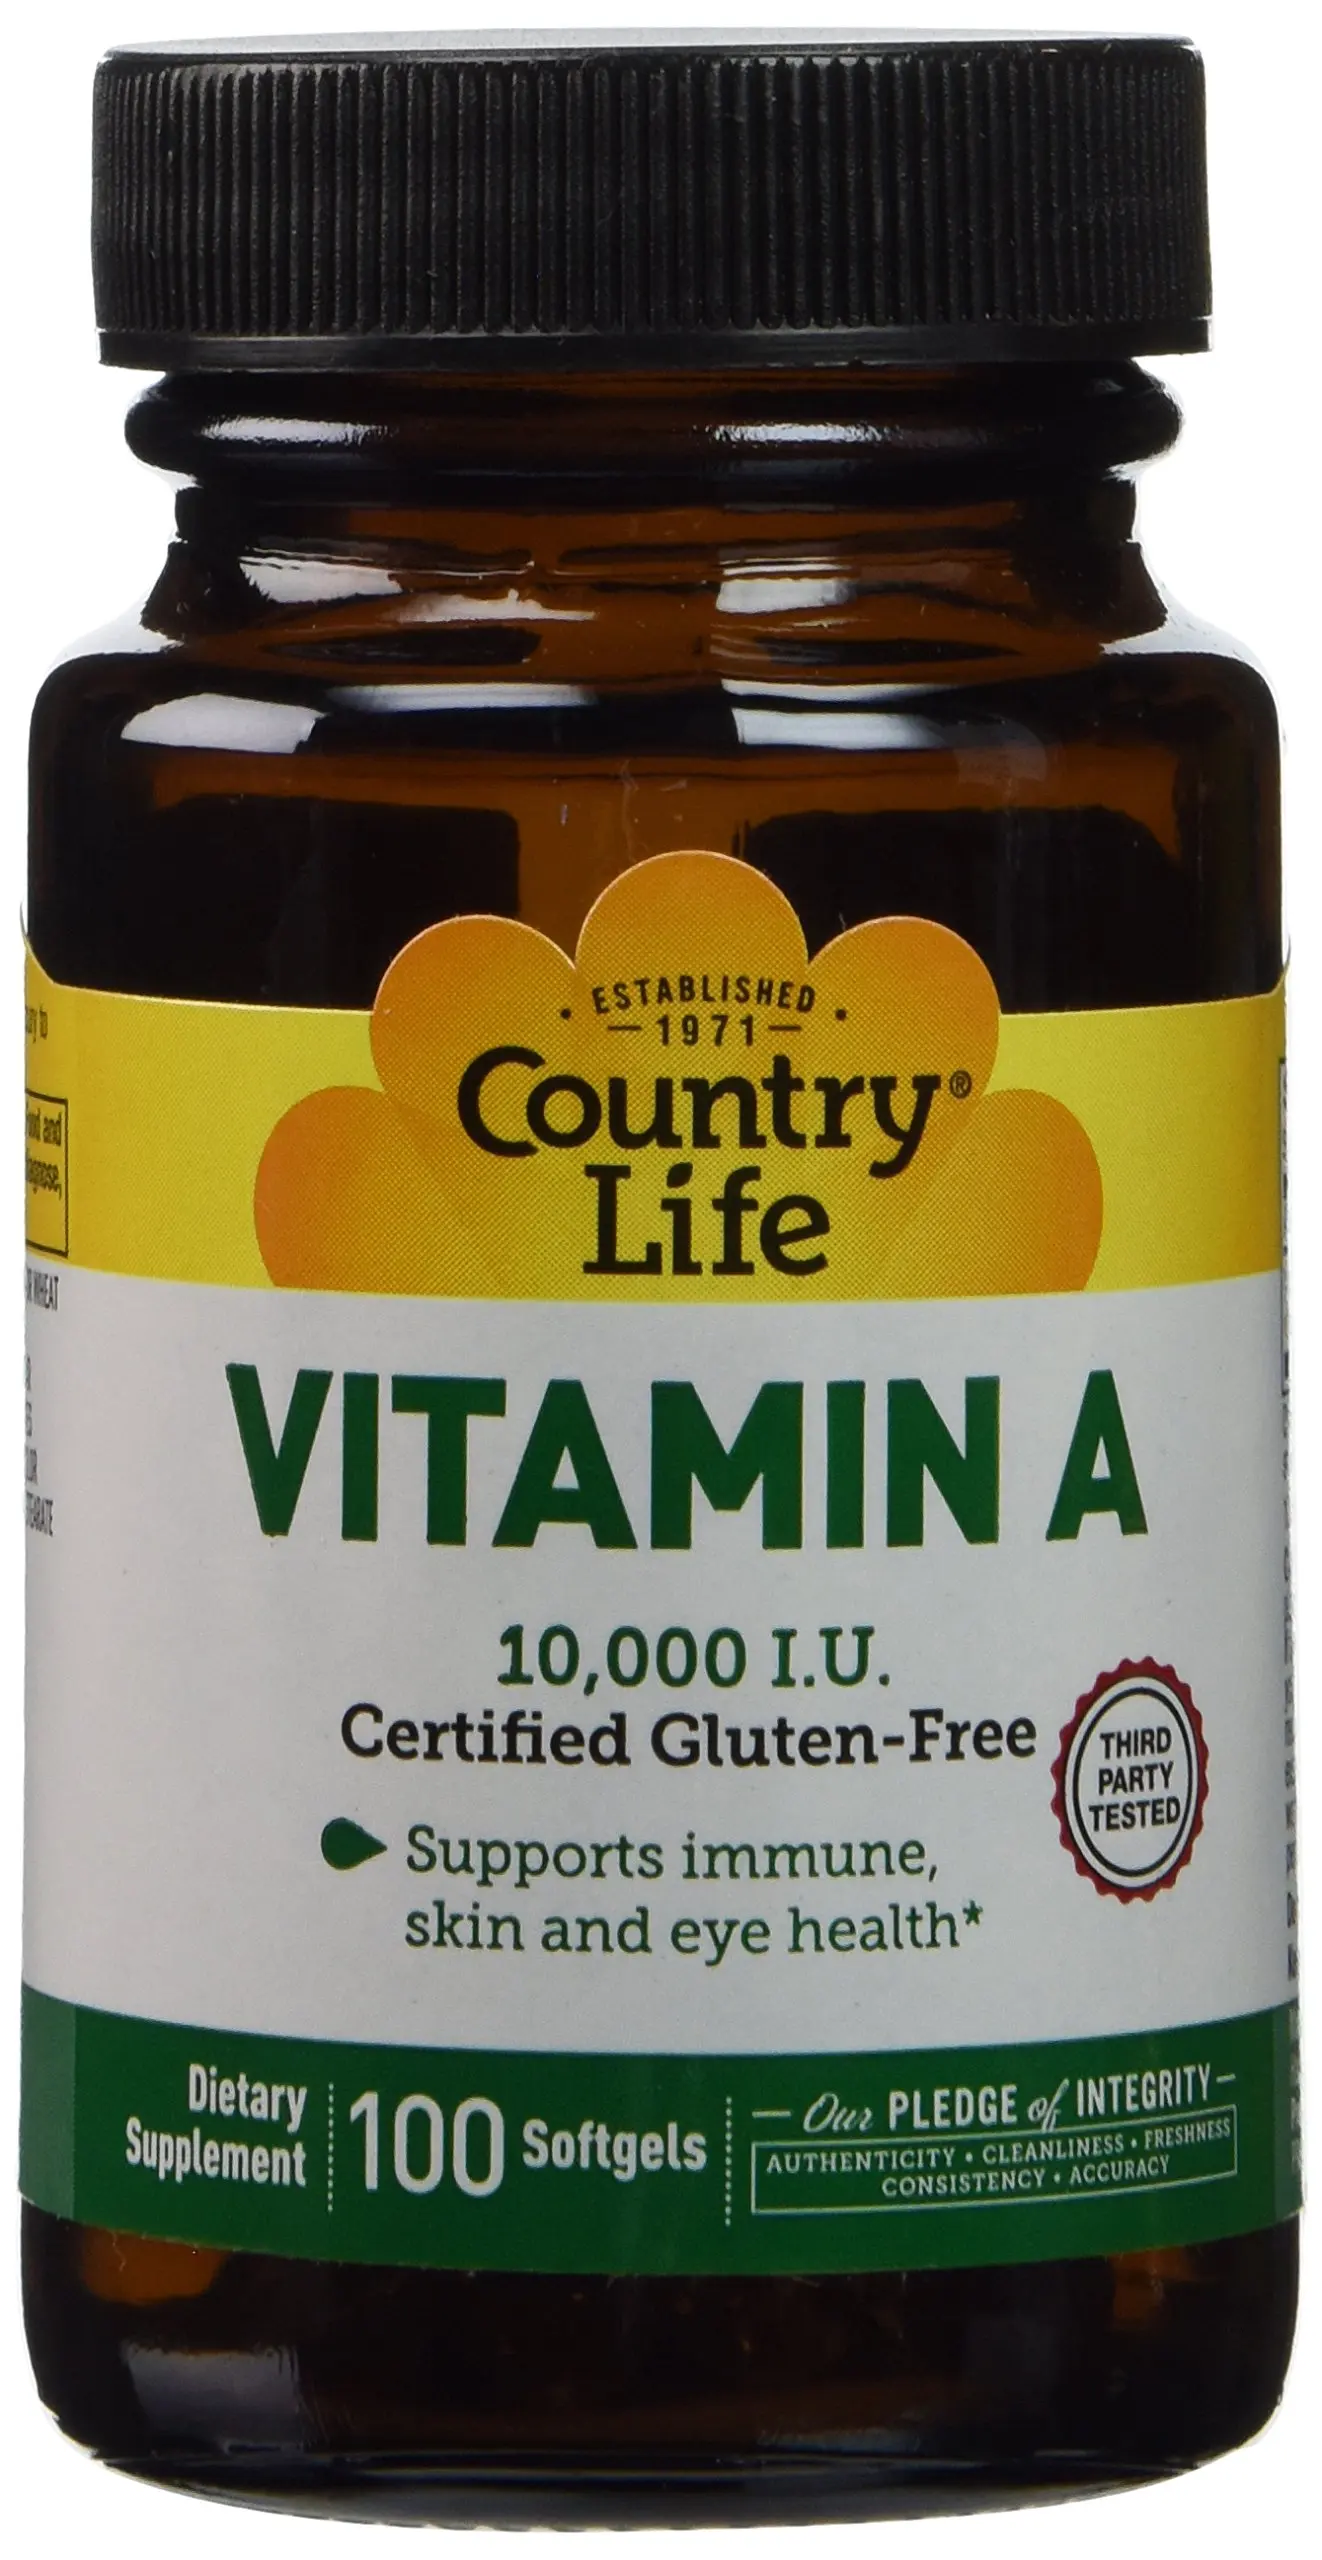 Cheap Vitamin D 5000 Units Find Vitamin D 5000 Units Deals